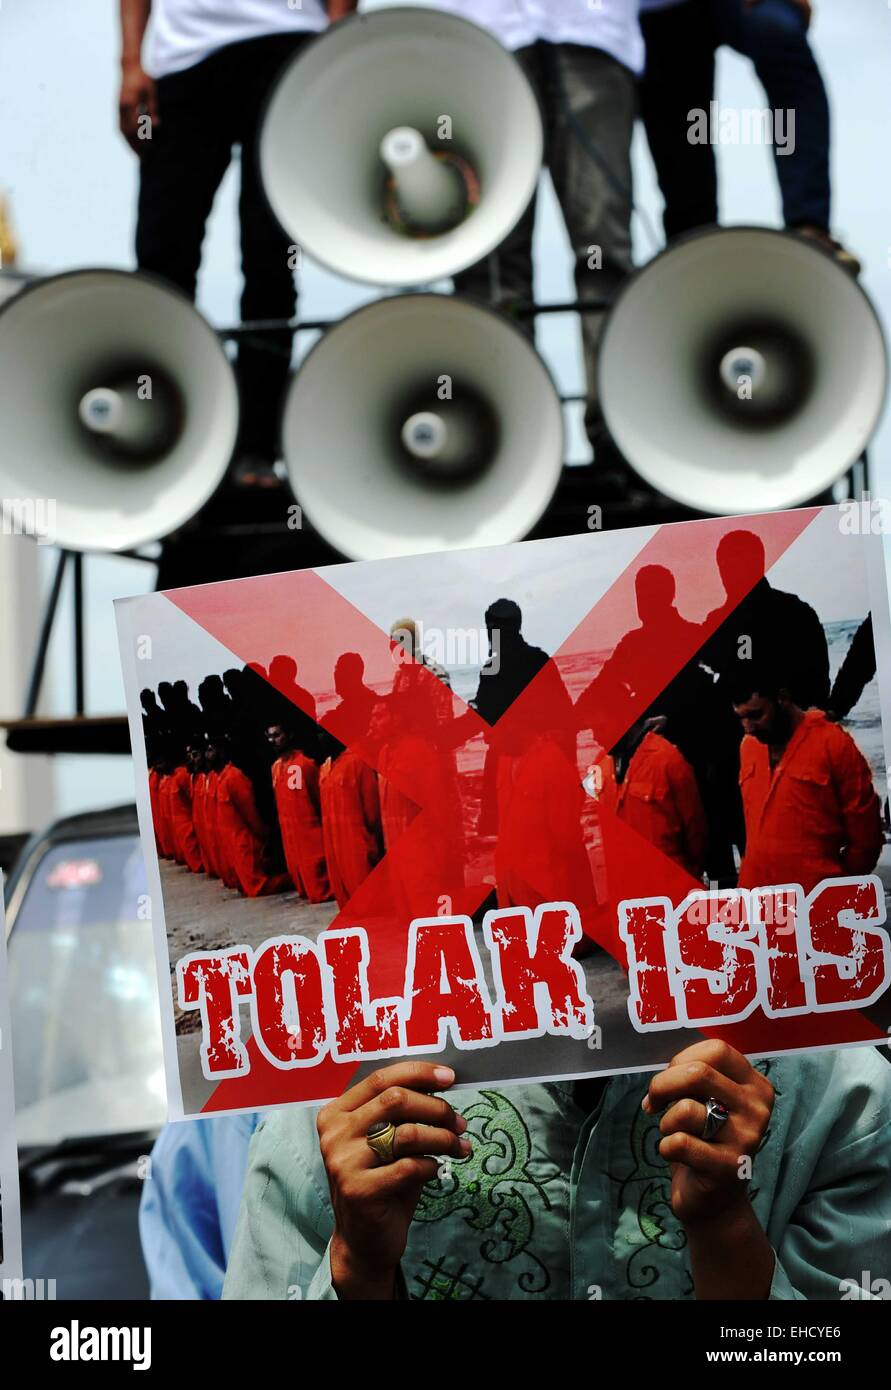 Jakarta, Indonésie. 12Th Mar, 2015. Une étudiante musulmane indonésienne est titulaire d'une plaque fusible "lecture ISIS' pendant un anti-ISIS (l'État islamique en Irak et en Syrie) rallye à Jakarta, Indonésie, le 12 mars 2015. Ti'Kuncahya Crédit : B./Xinhua/Alamy Live News Banque D'Images